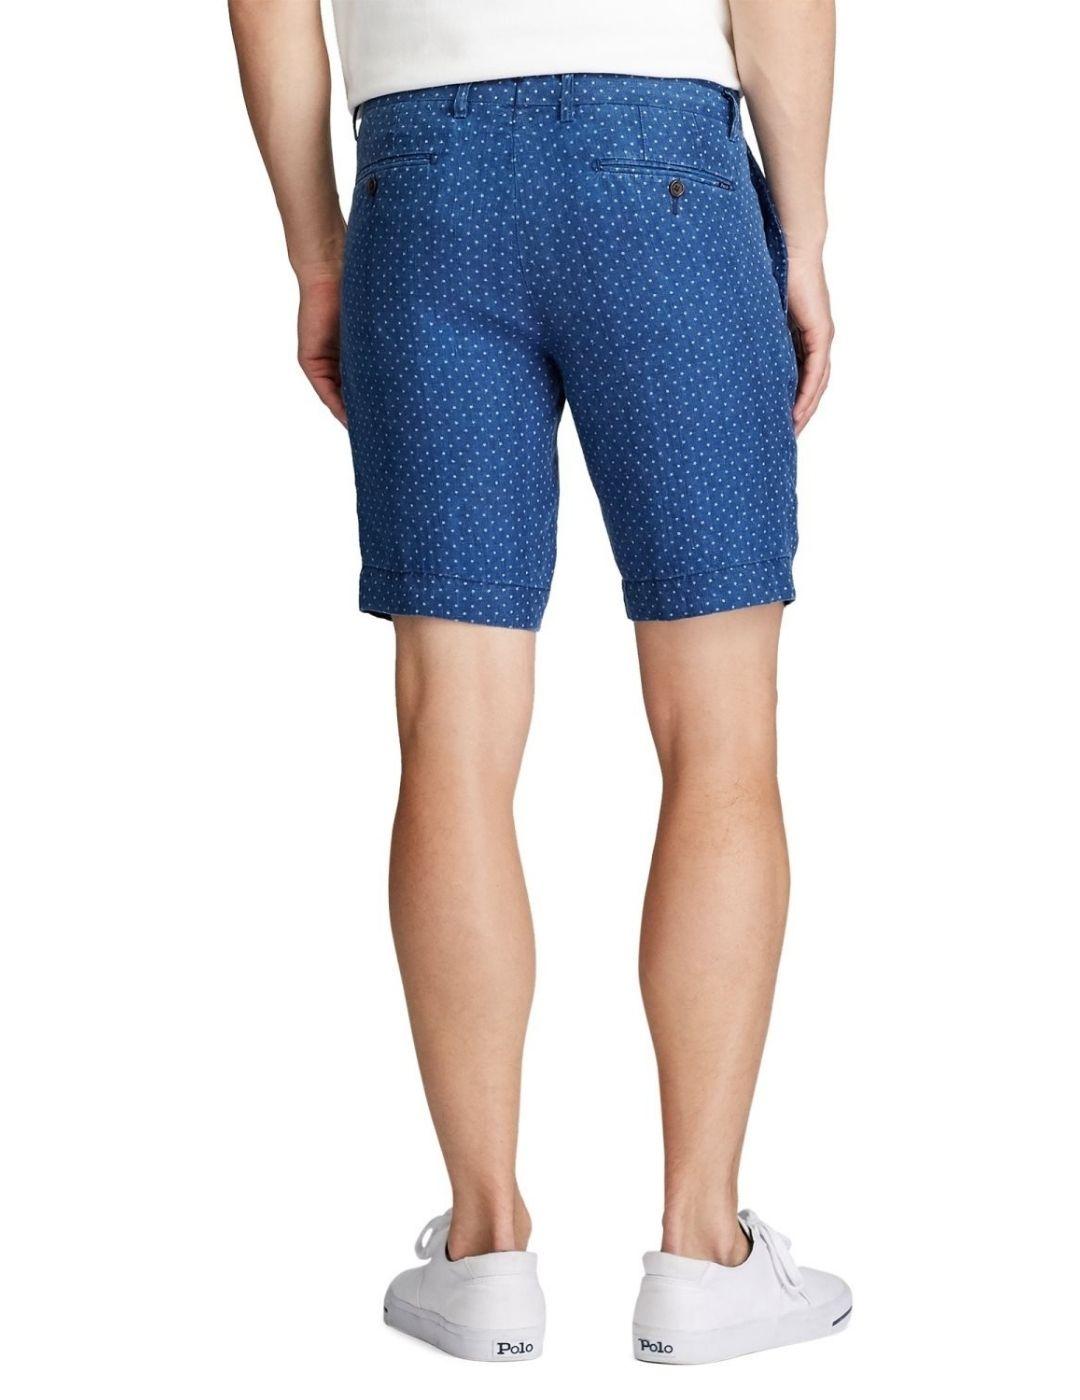 Pantalones cortos Polo Ralph Lauren de lino con estrellas